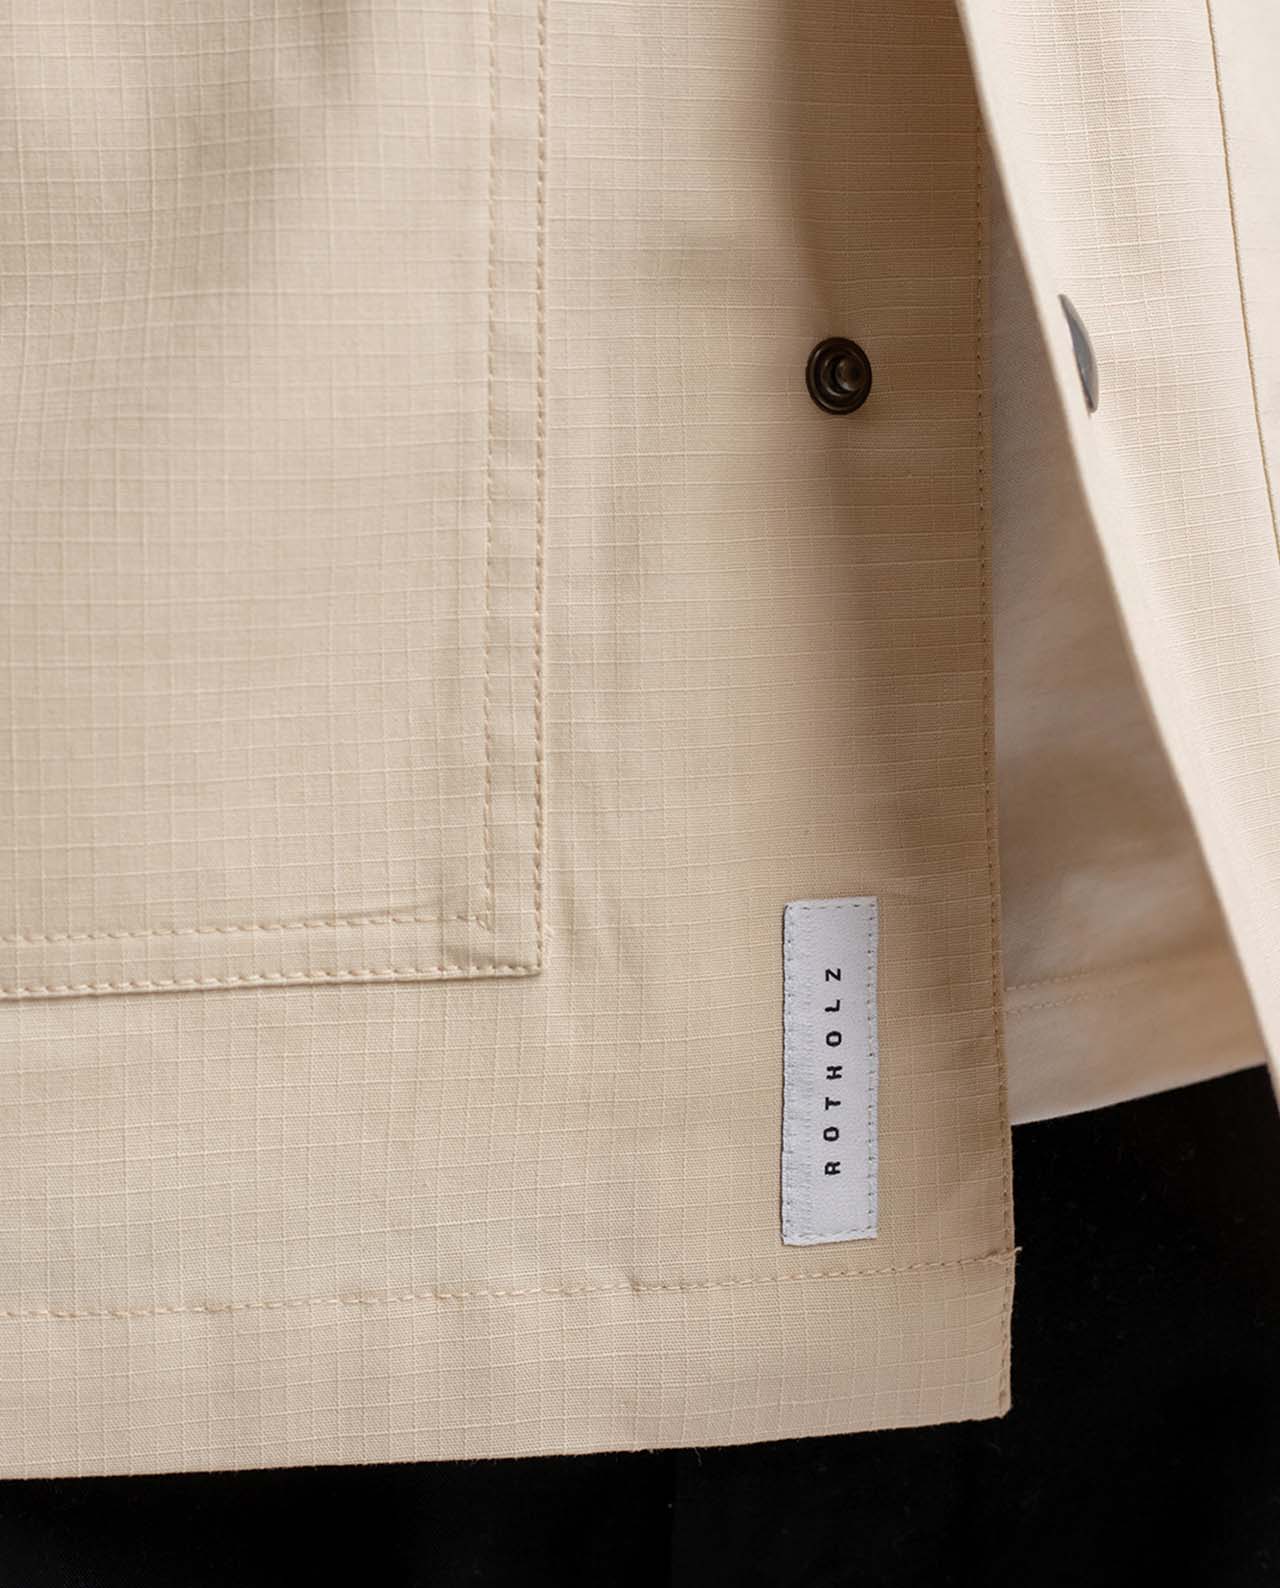 marché commun rotholz veste homme courte coton biologique éco-responsable éthique fabriquée en Europe beige